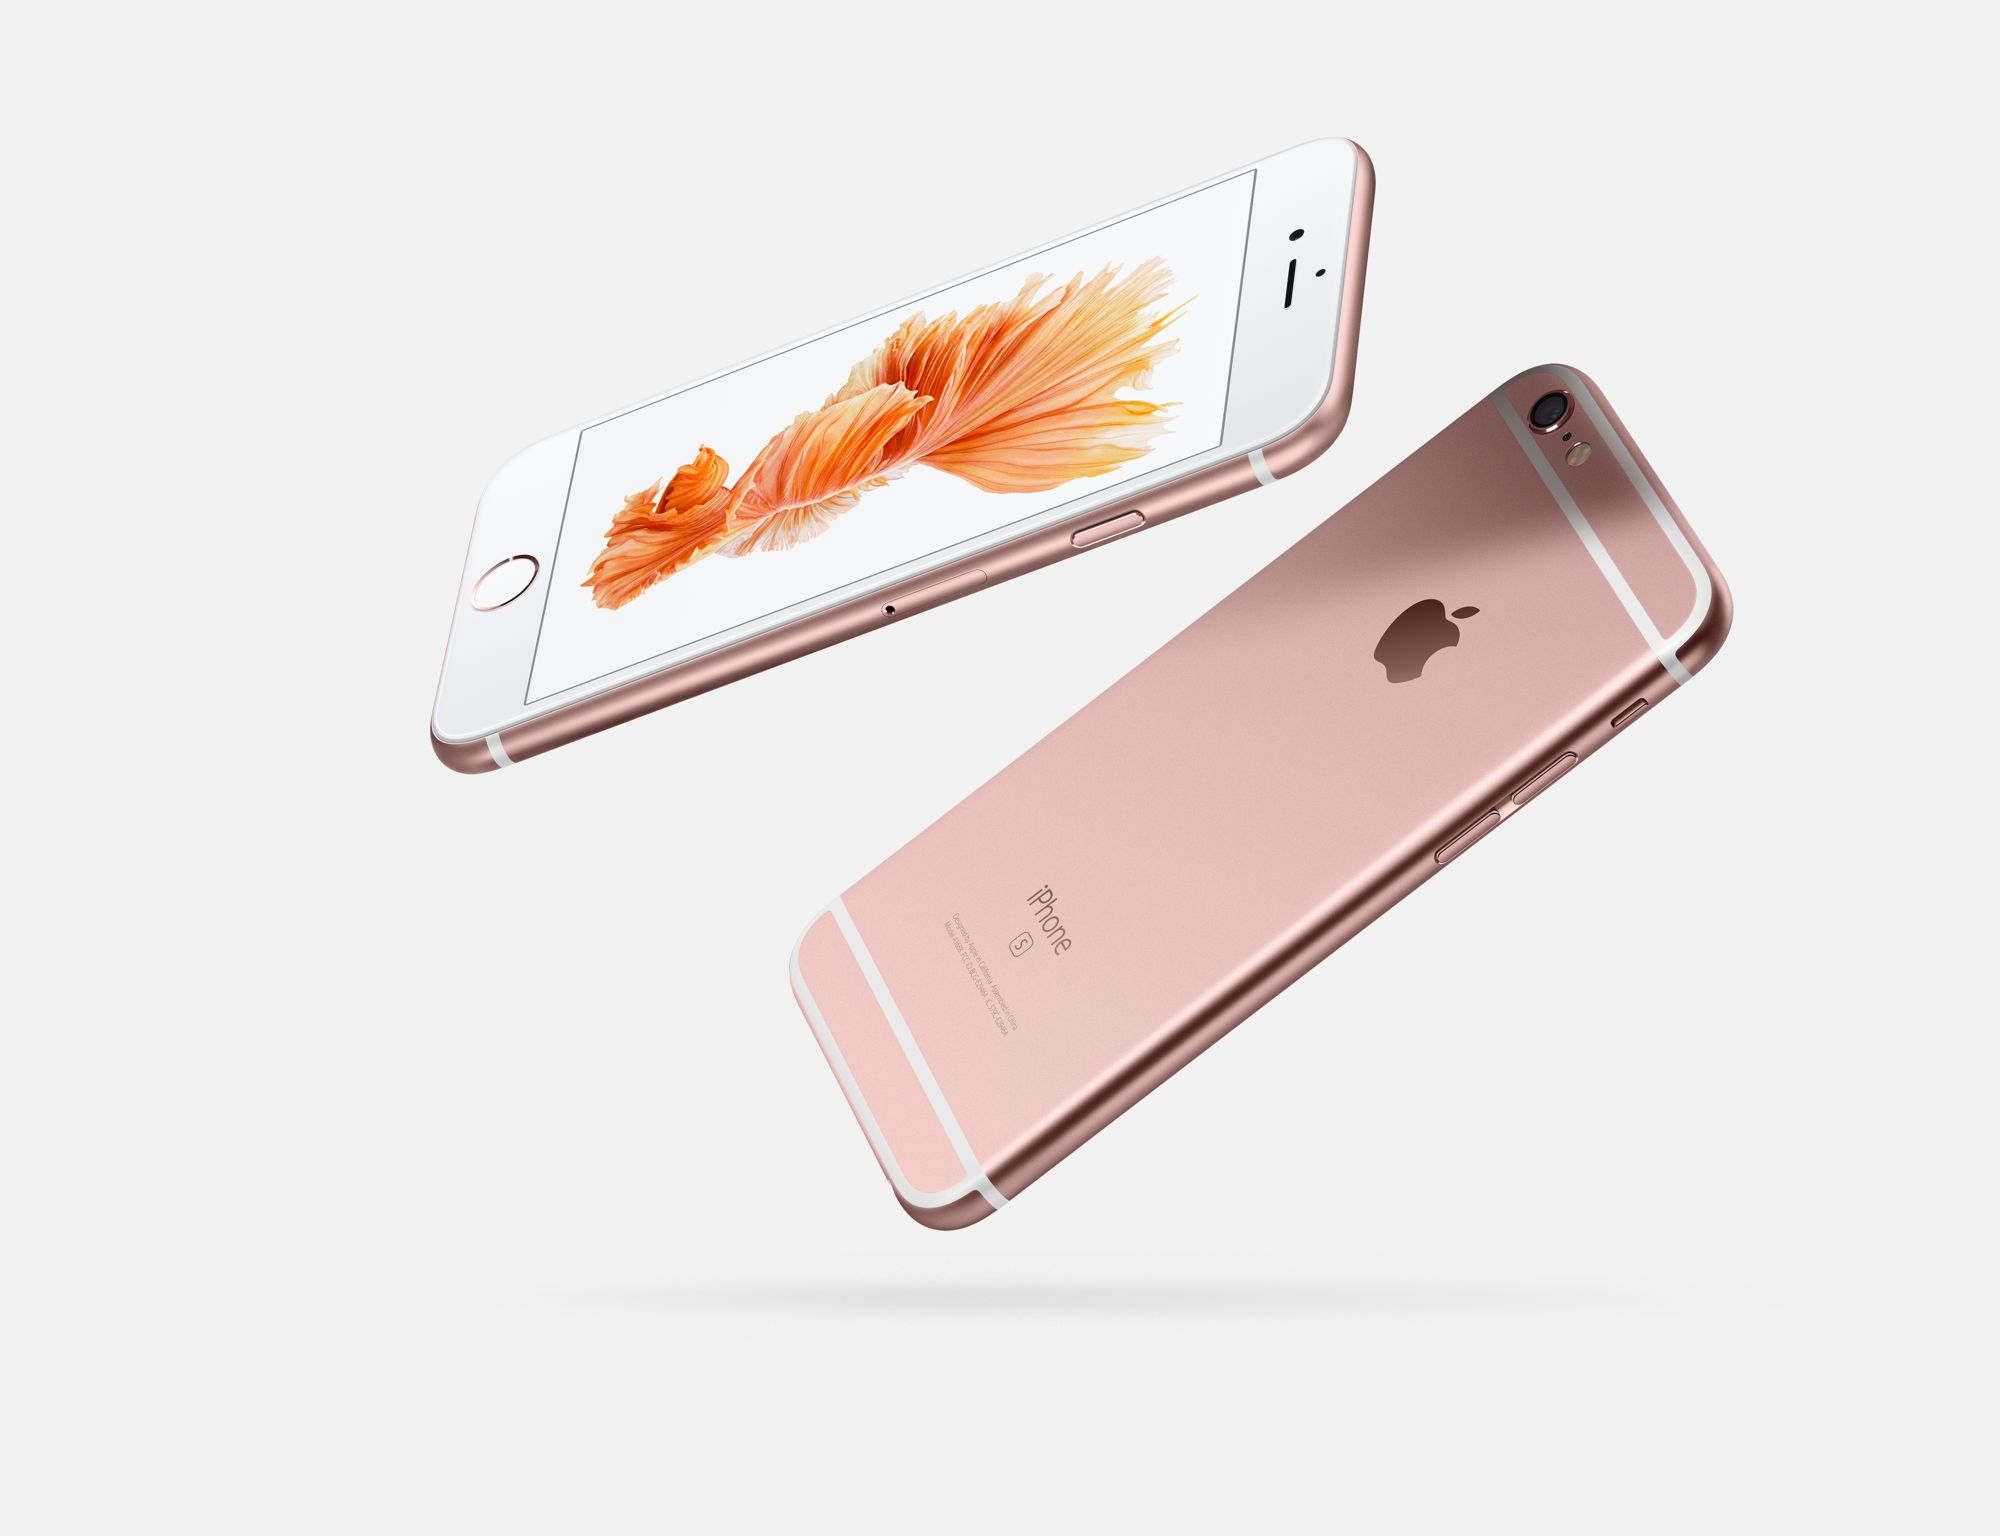 iPhone 6S plus or Rose